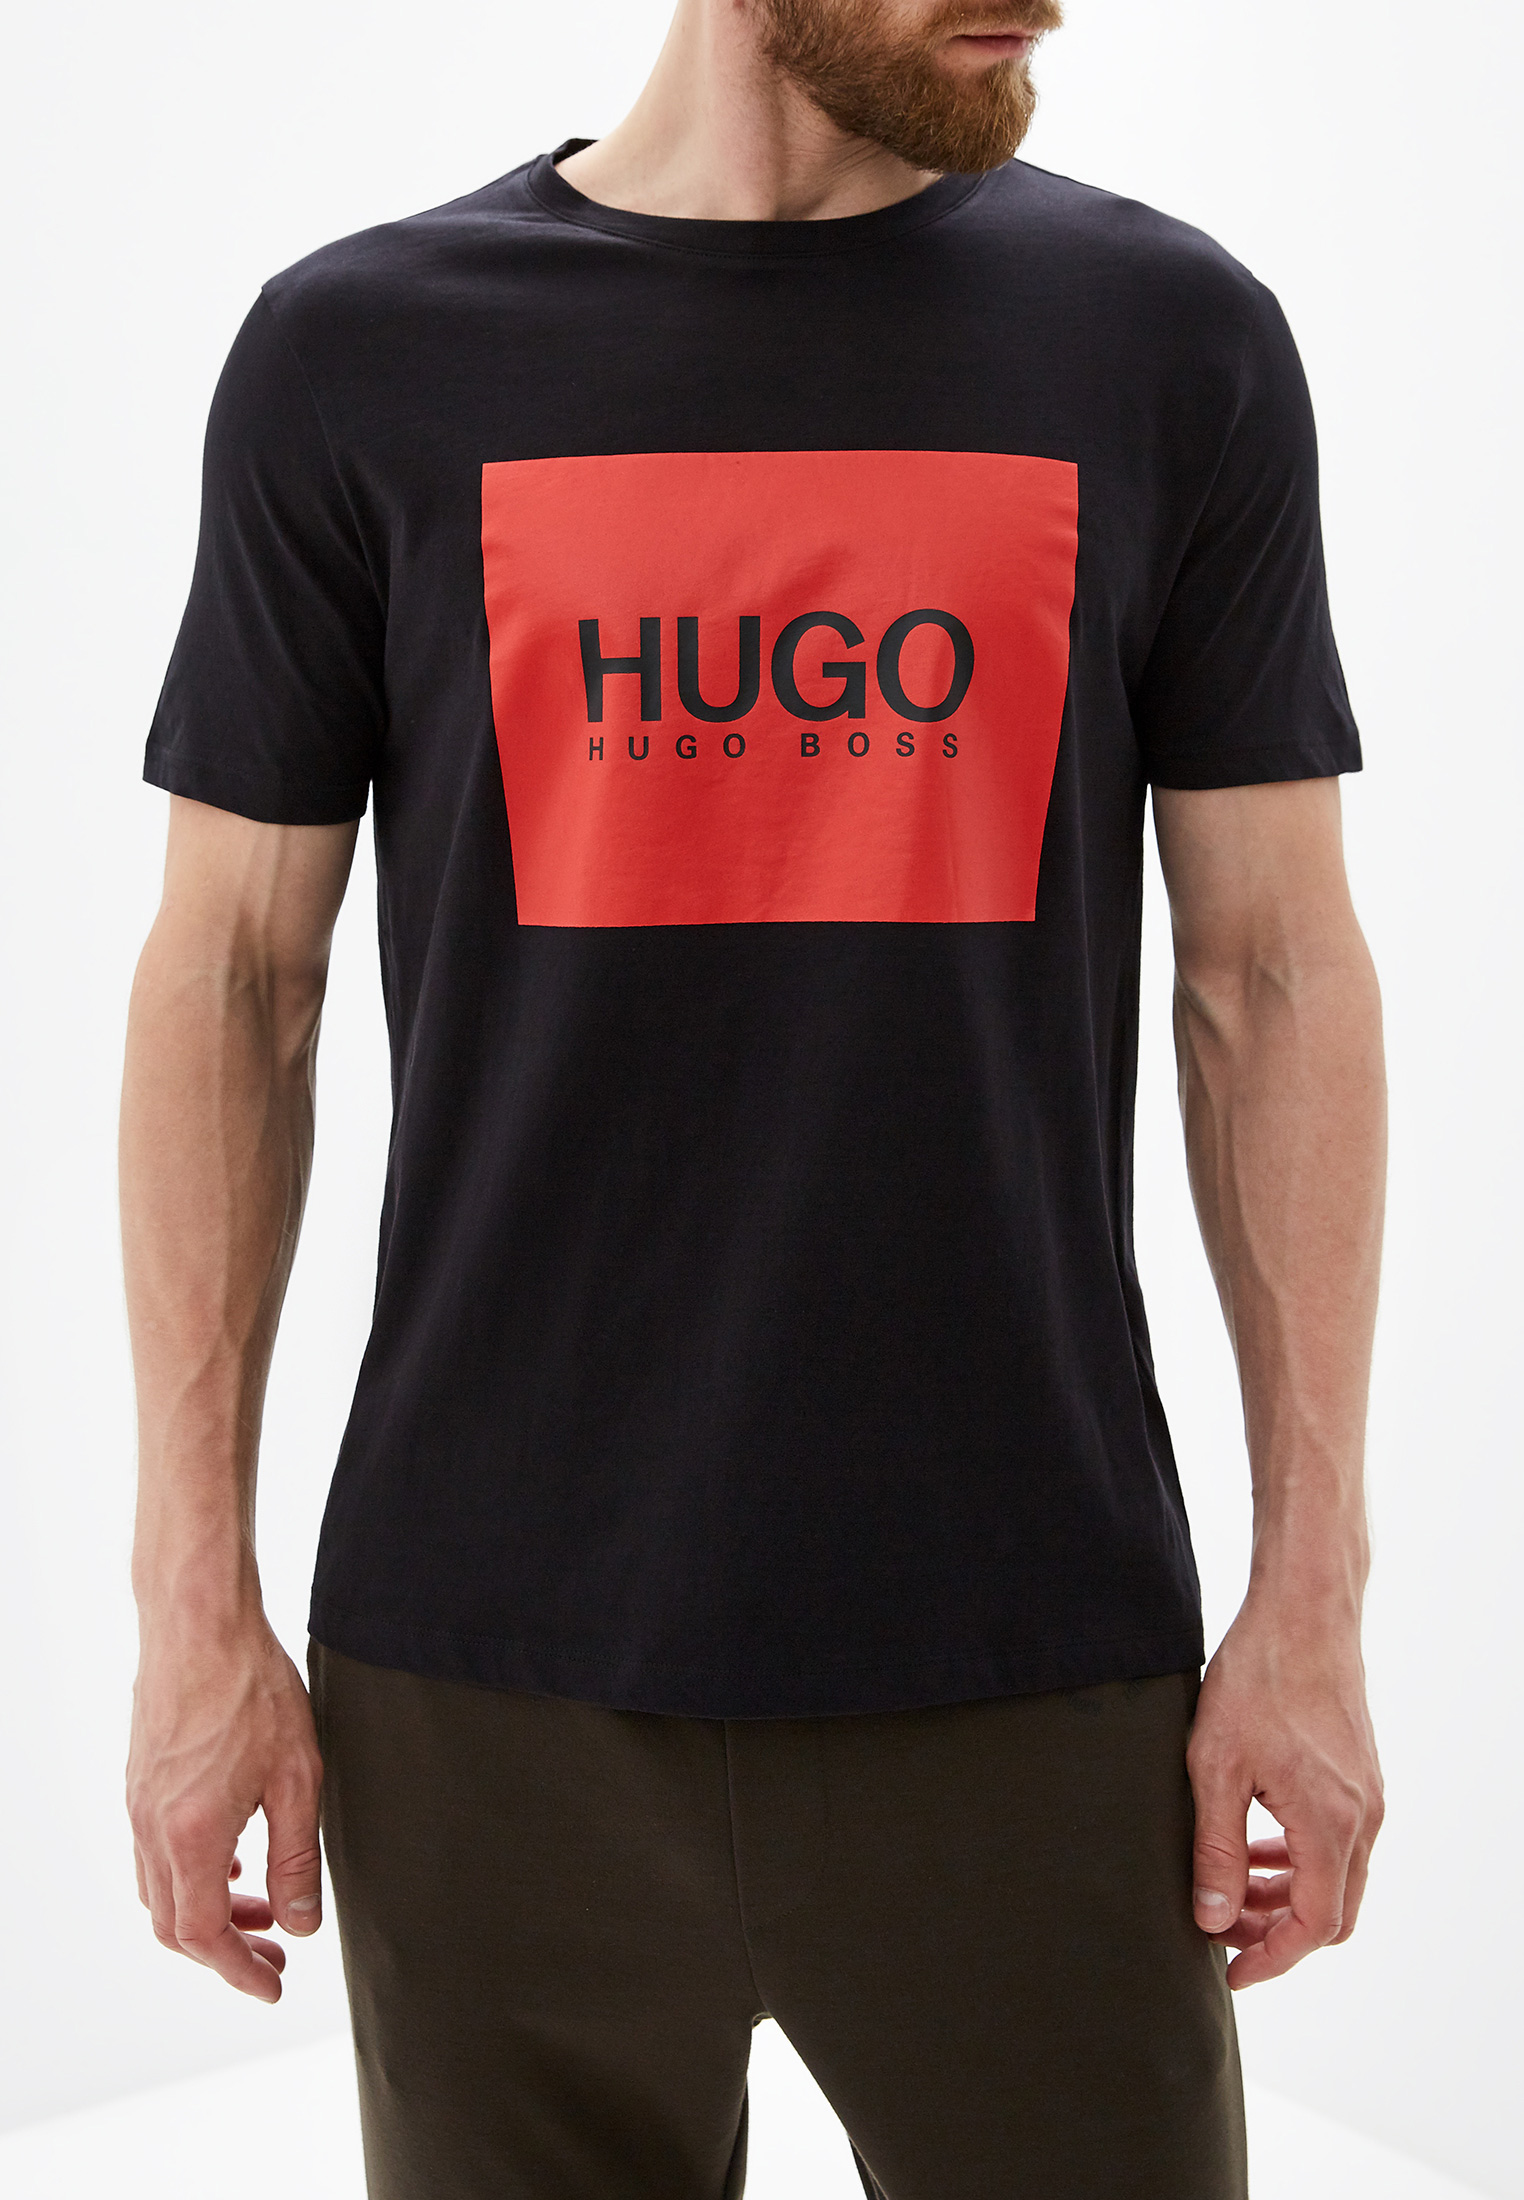 Купить hugo оригинал. Футболка Хуго босс 2009-. Майка Хуго босс черная. Футболка Hugo Boss 2022. Футболка Хуго босс черная.